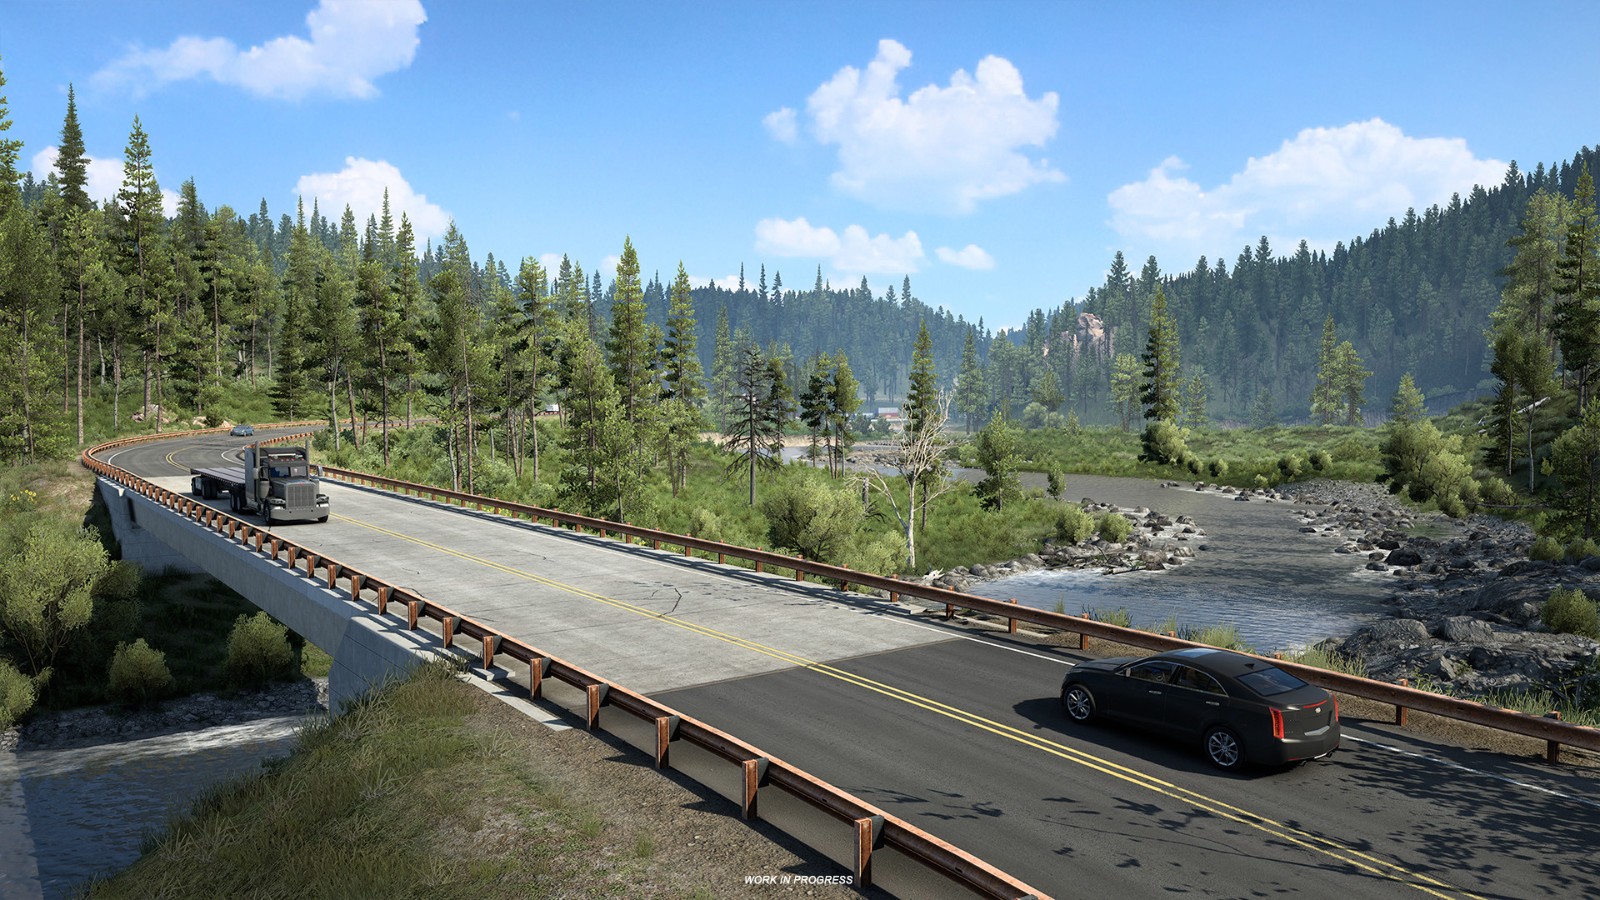 《美國卡車模擬》新DLC蒙大拿開發版實機演示公開